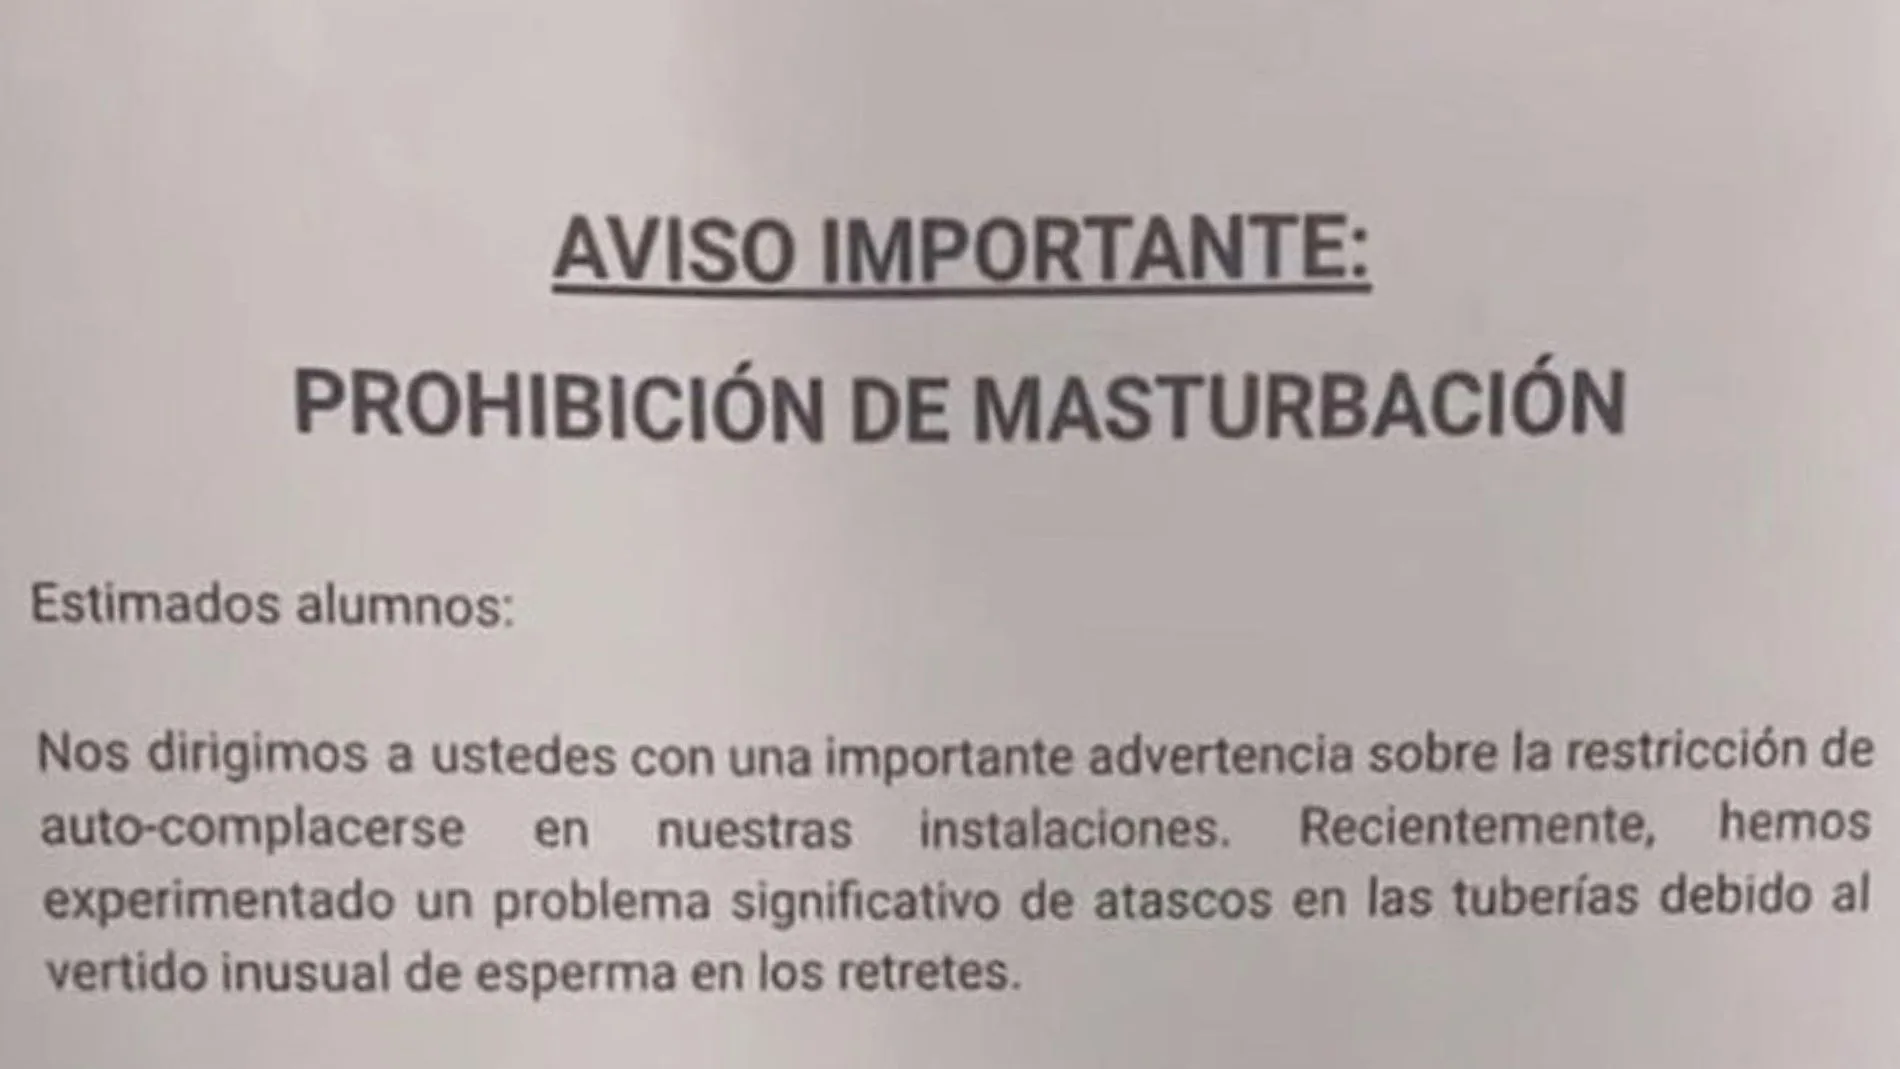 Así comienza el bulo que está circulando por redes sociales sobre la "prohibición de masturbación" en un instituto de Madrid